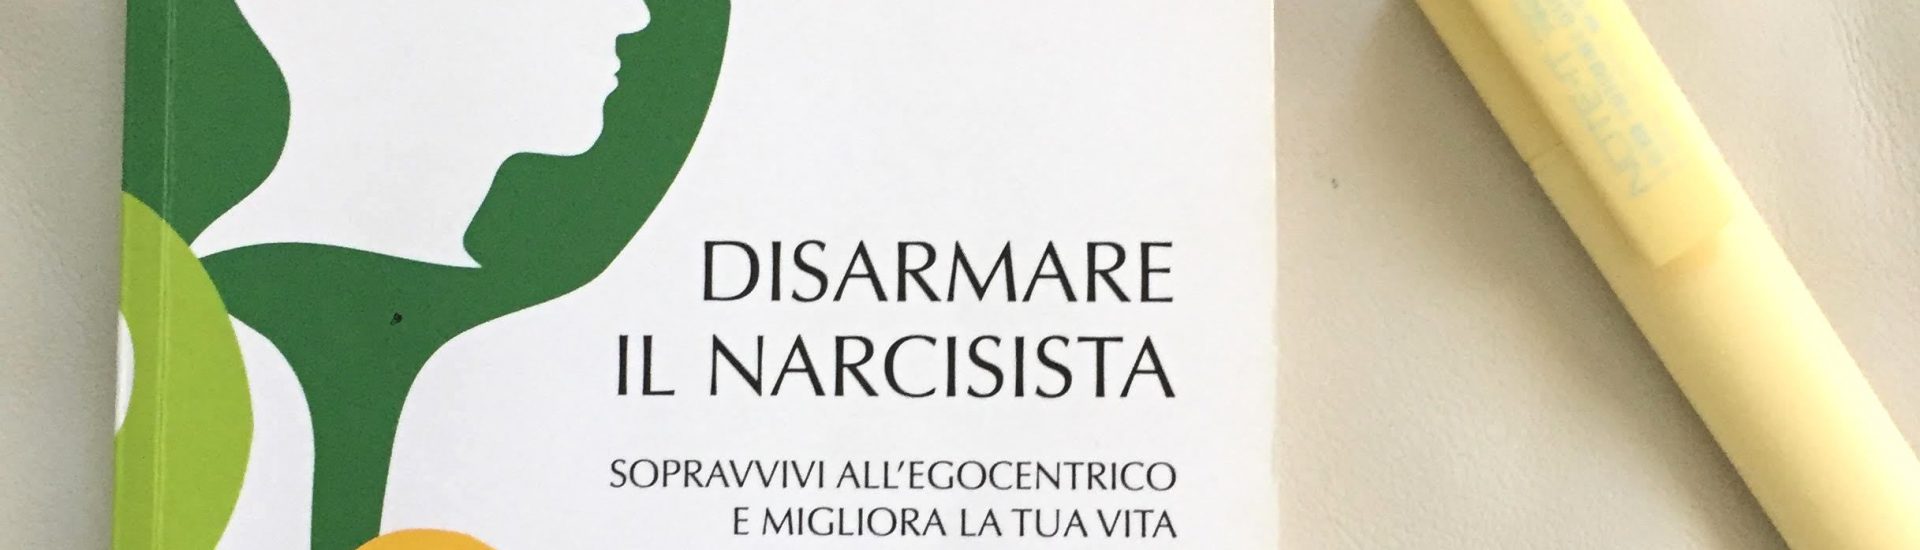 disarmare il narcisista